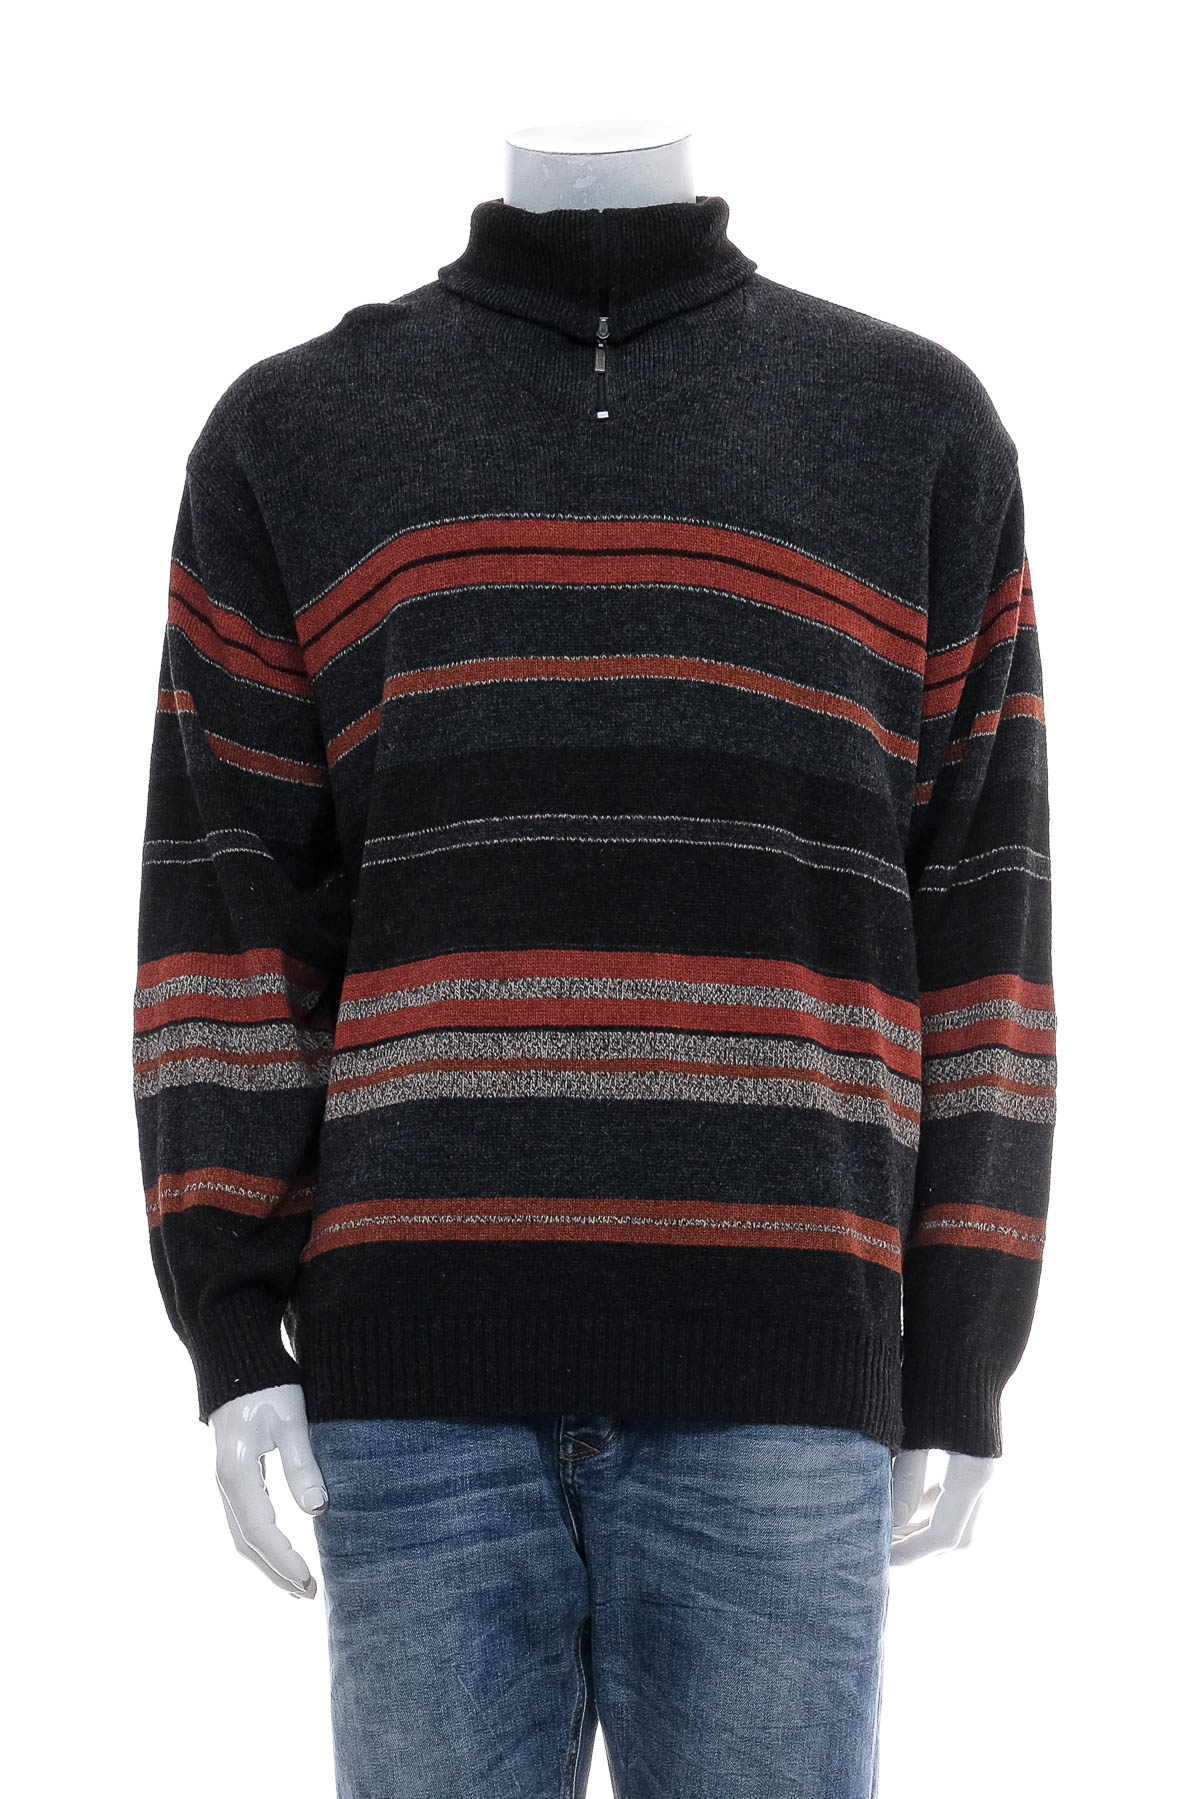 Men's sweater - Larusso - 0